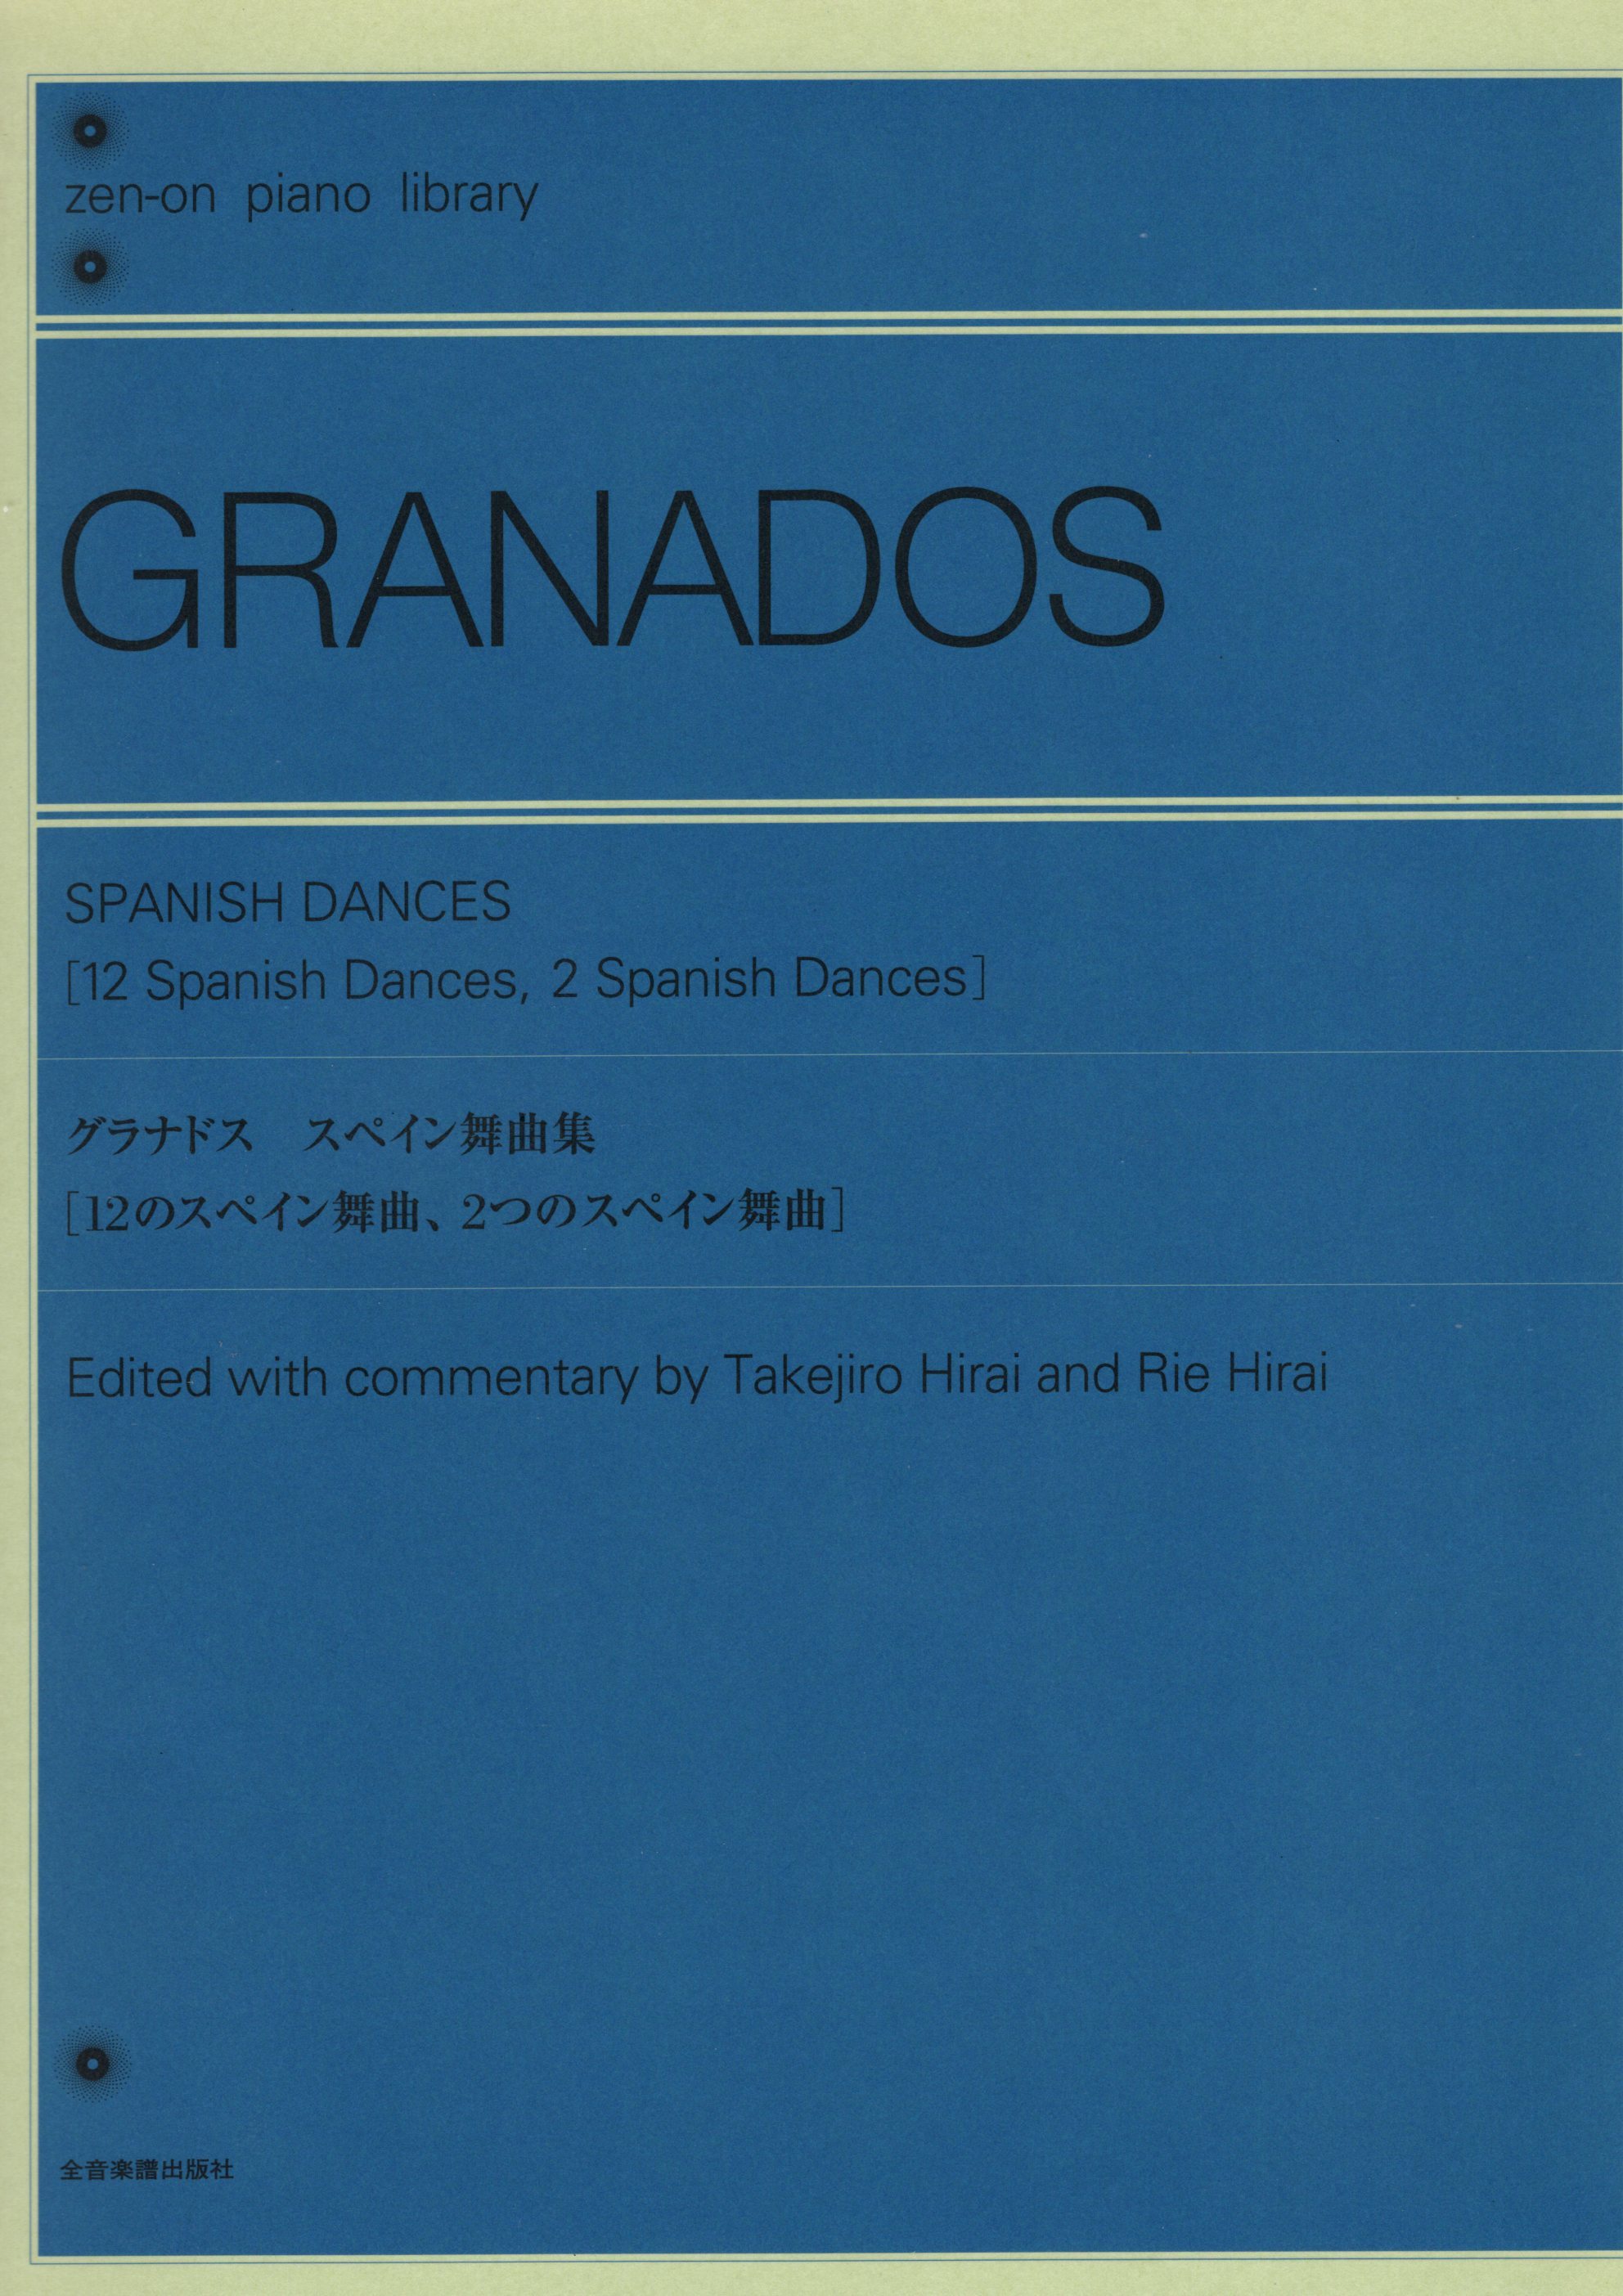 グラナドス スペイン舞曲集 第5番 アンダルシア 輸入楽譜 輸入 楽譜 舞曲